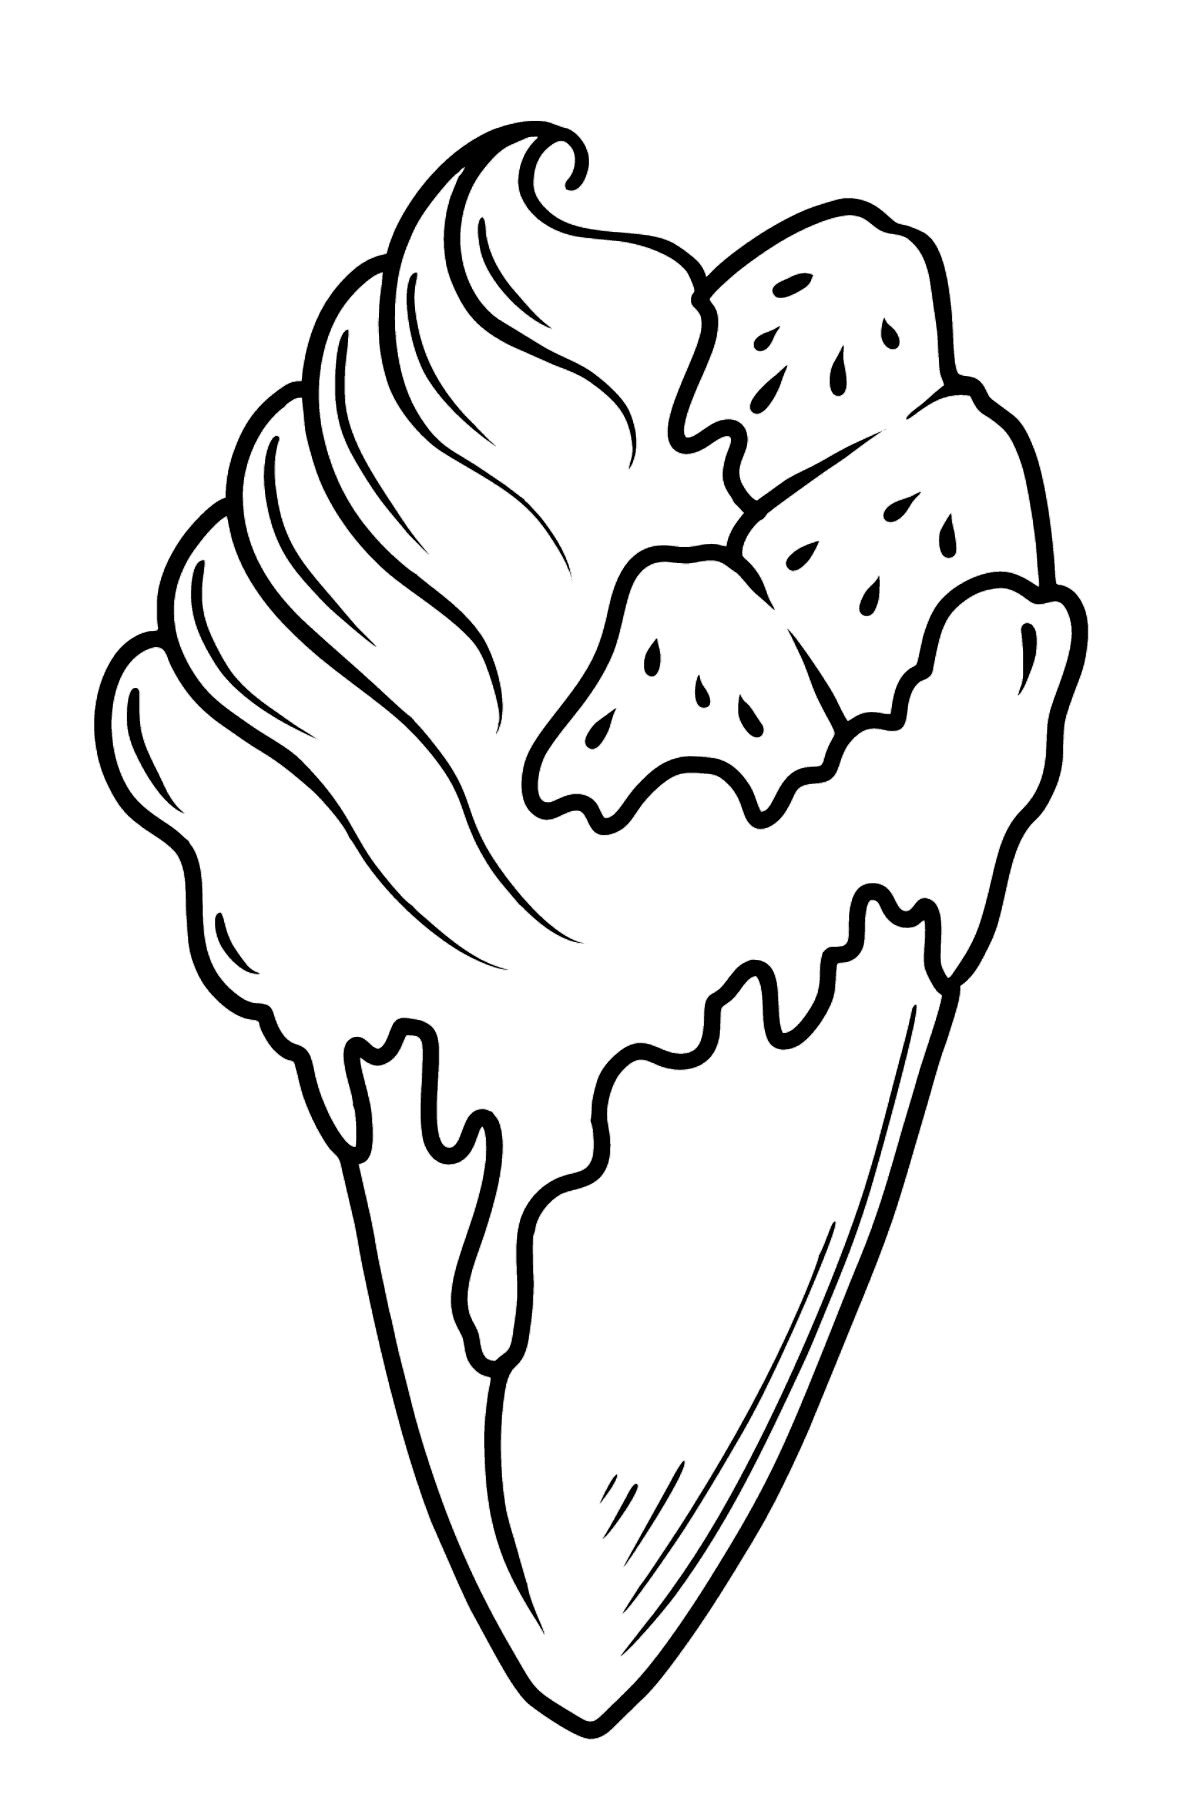 Omalovánka banánová zmrzlina - Omalovánky pro děti